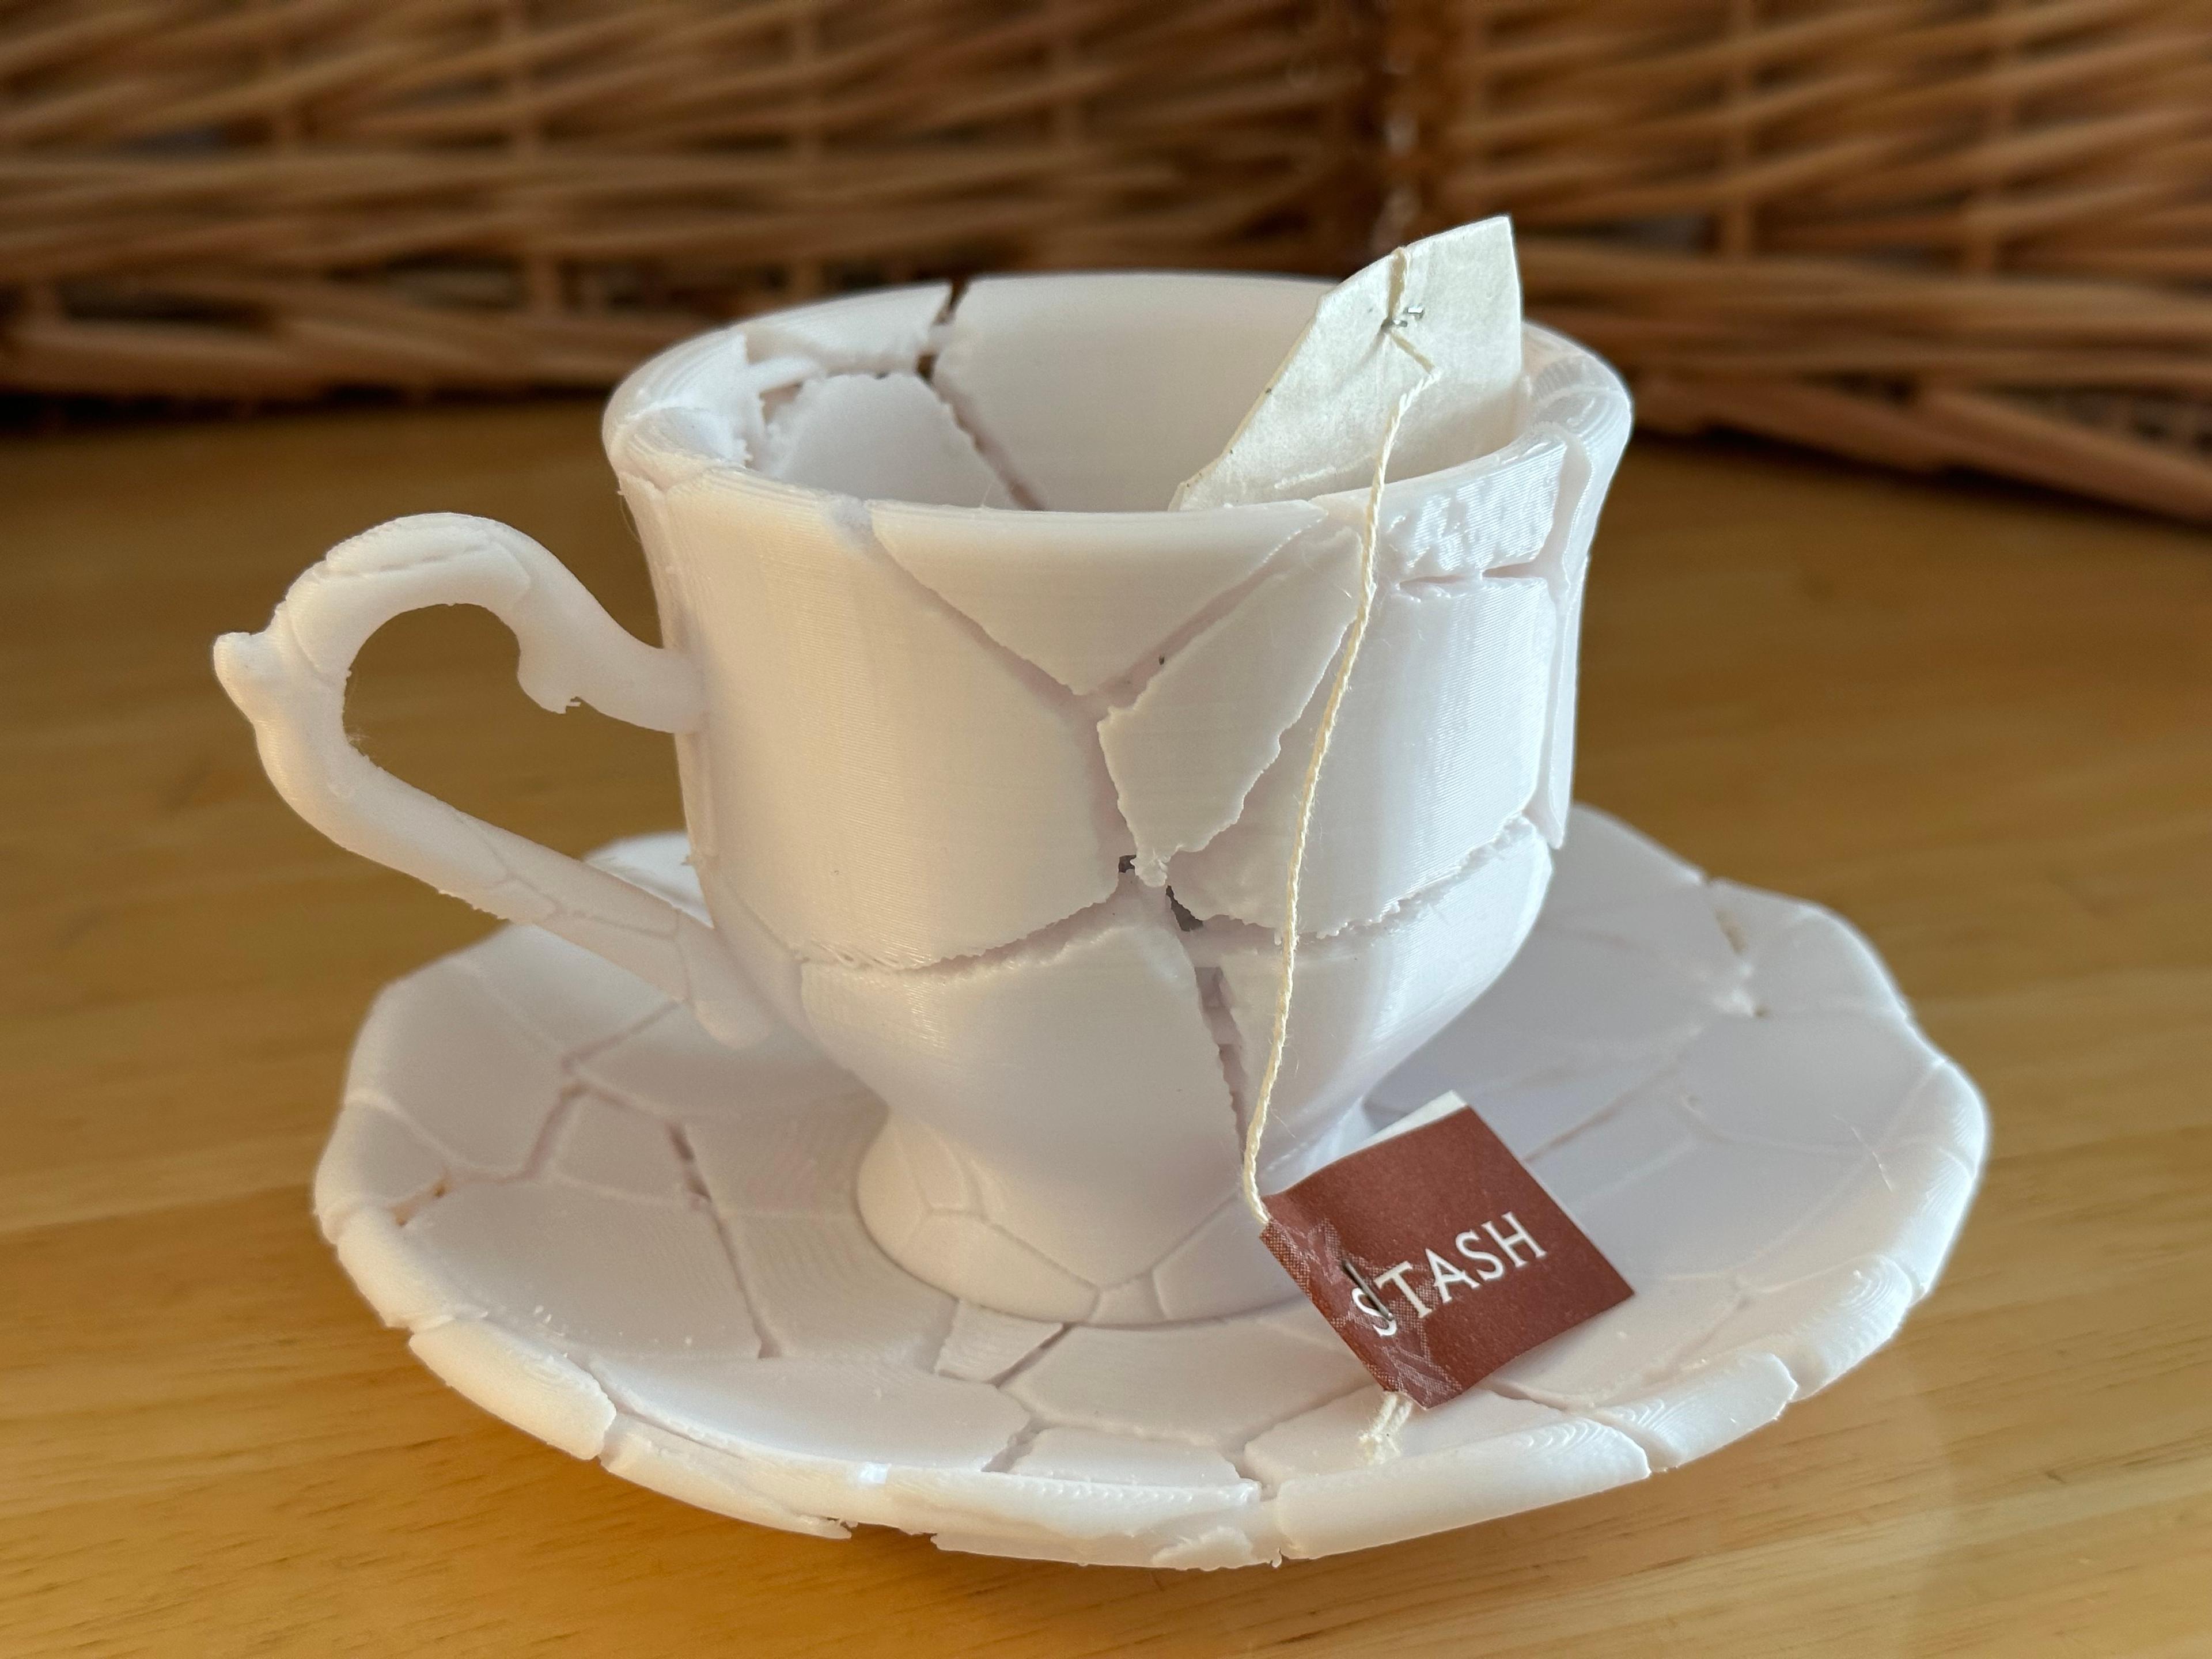 Smashed Teacup 3d model